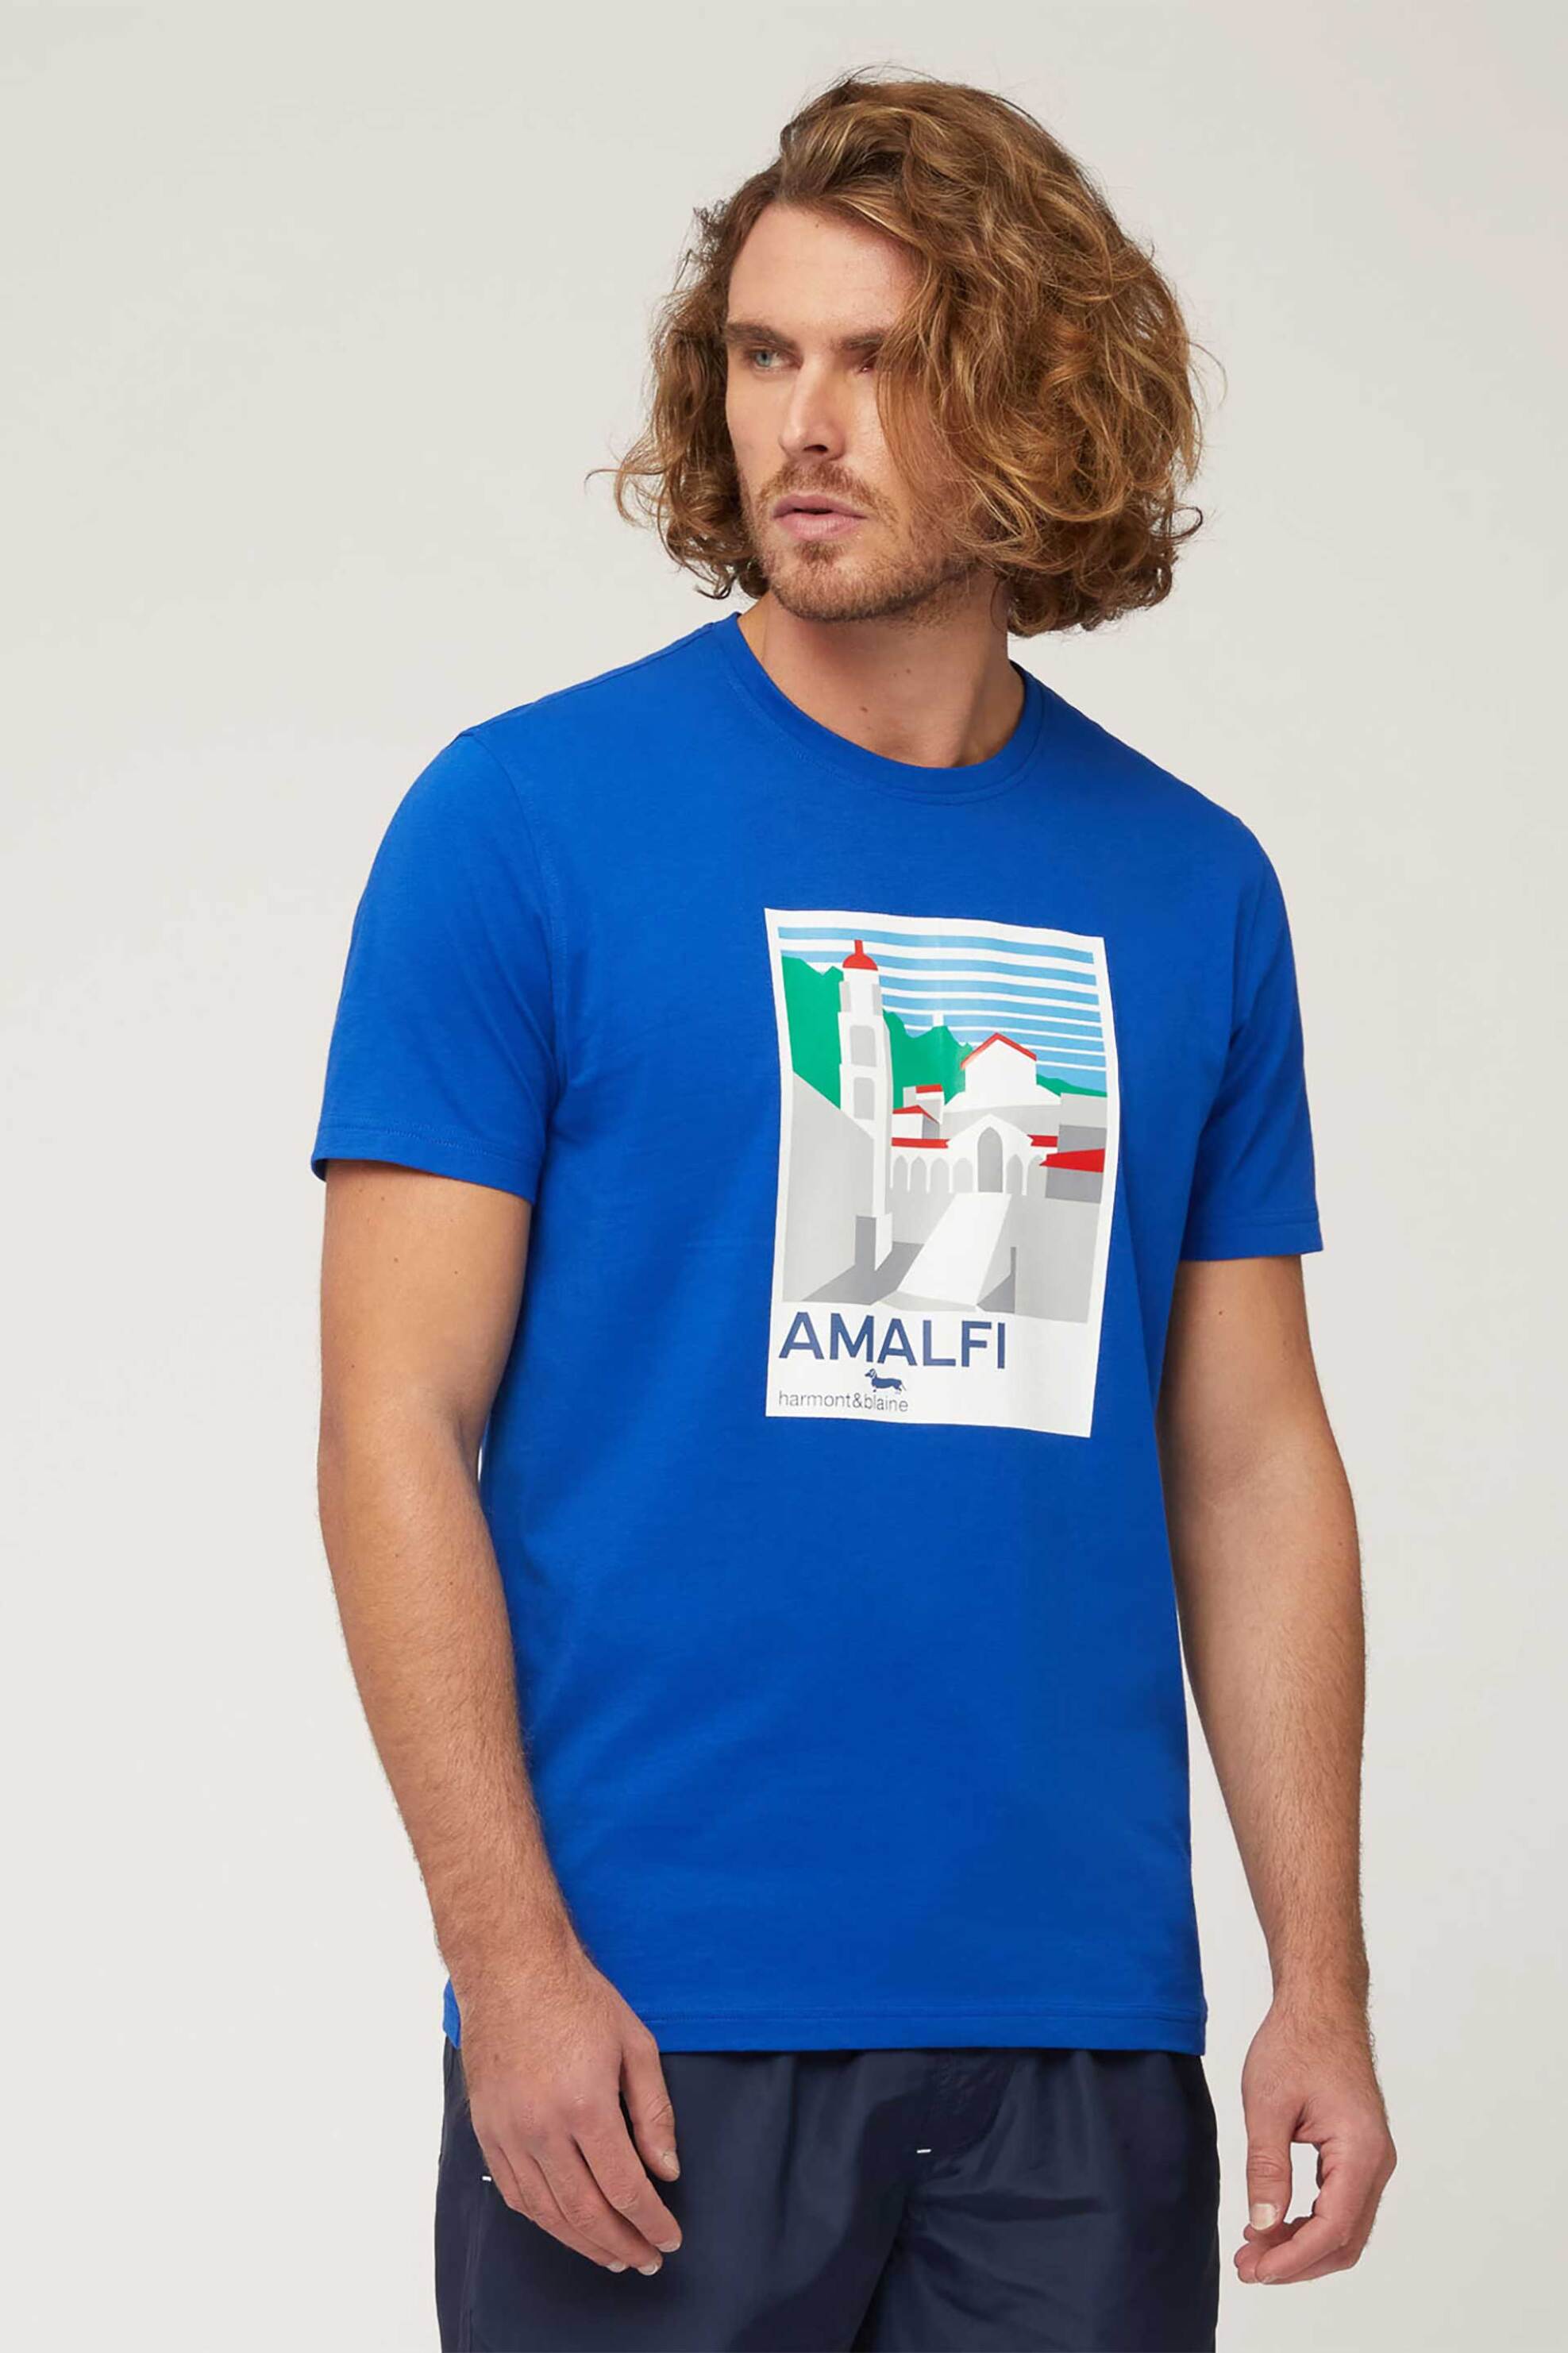 Ανδρική Μόδα > Ανδρικά Ρούχα > Ανδρικές Μπλούζες > Ανδρικά T-Shirts Harmont & Blaine ανδρικό T-shirt με λογότυπο "Amalfi Coast" - IRL233021055 Μπλε